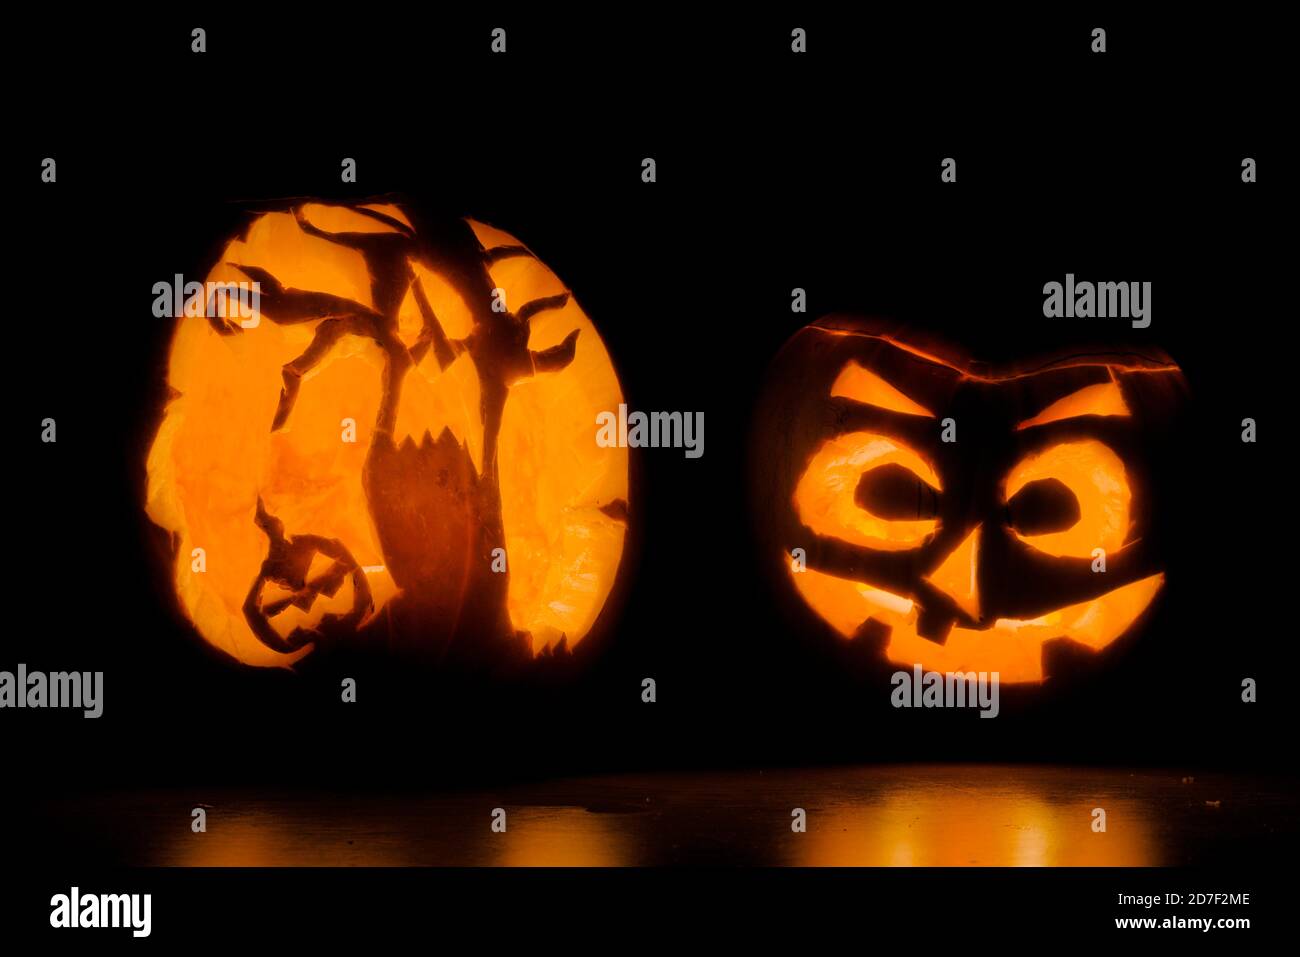 Deux citrouilles d'halloween finement sculptées éclairées par des bougies, l'une est d'un visage effrayant, et l'autre d'arbres terrifiants et une autre citrouille Banque D'Images